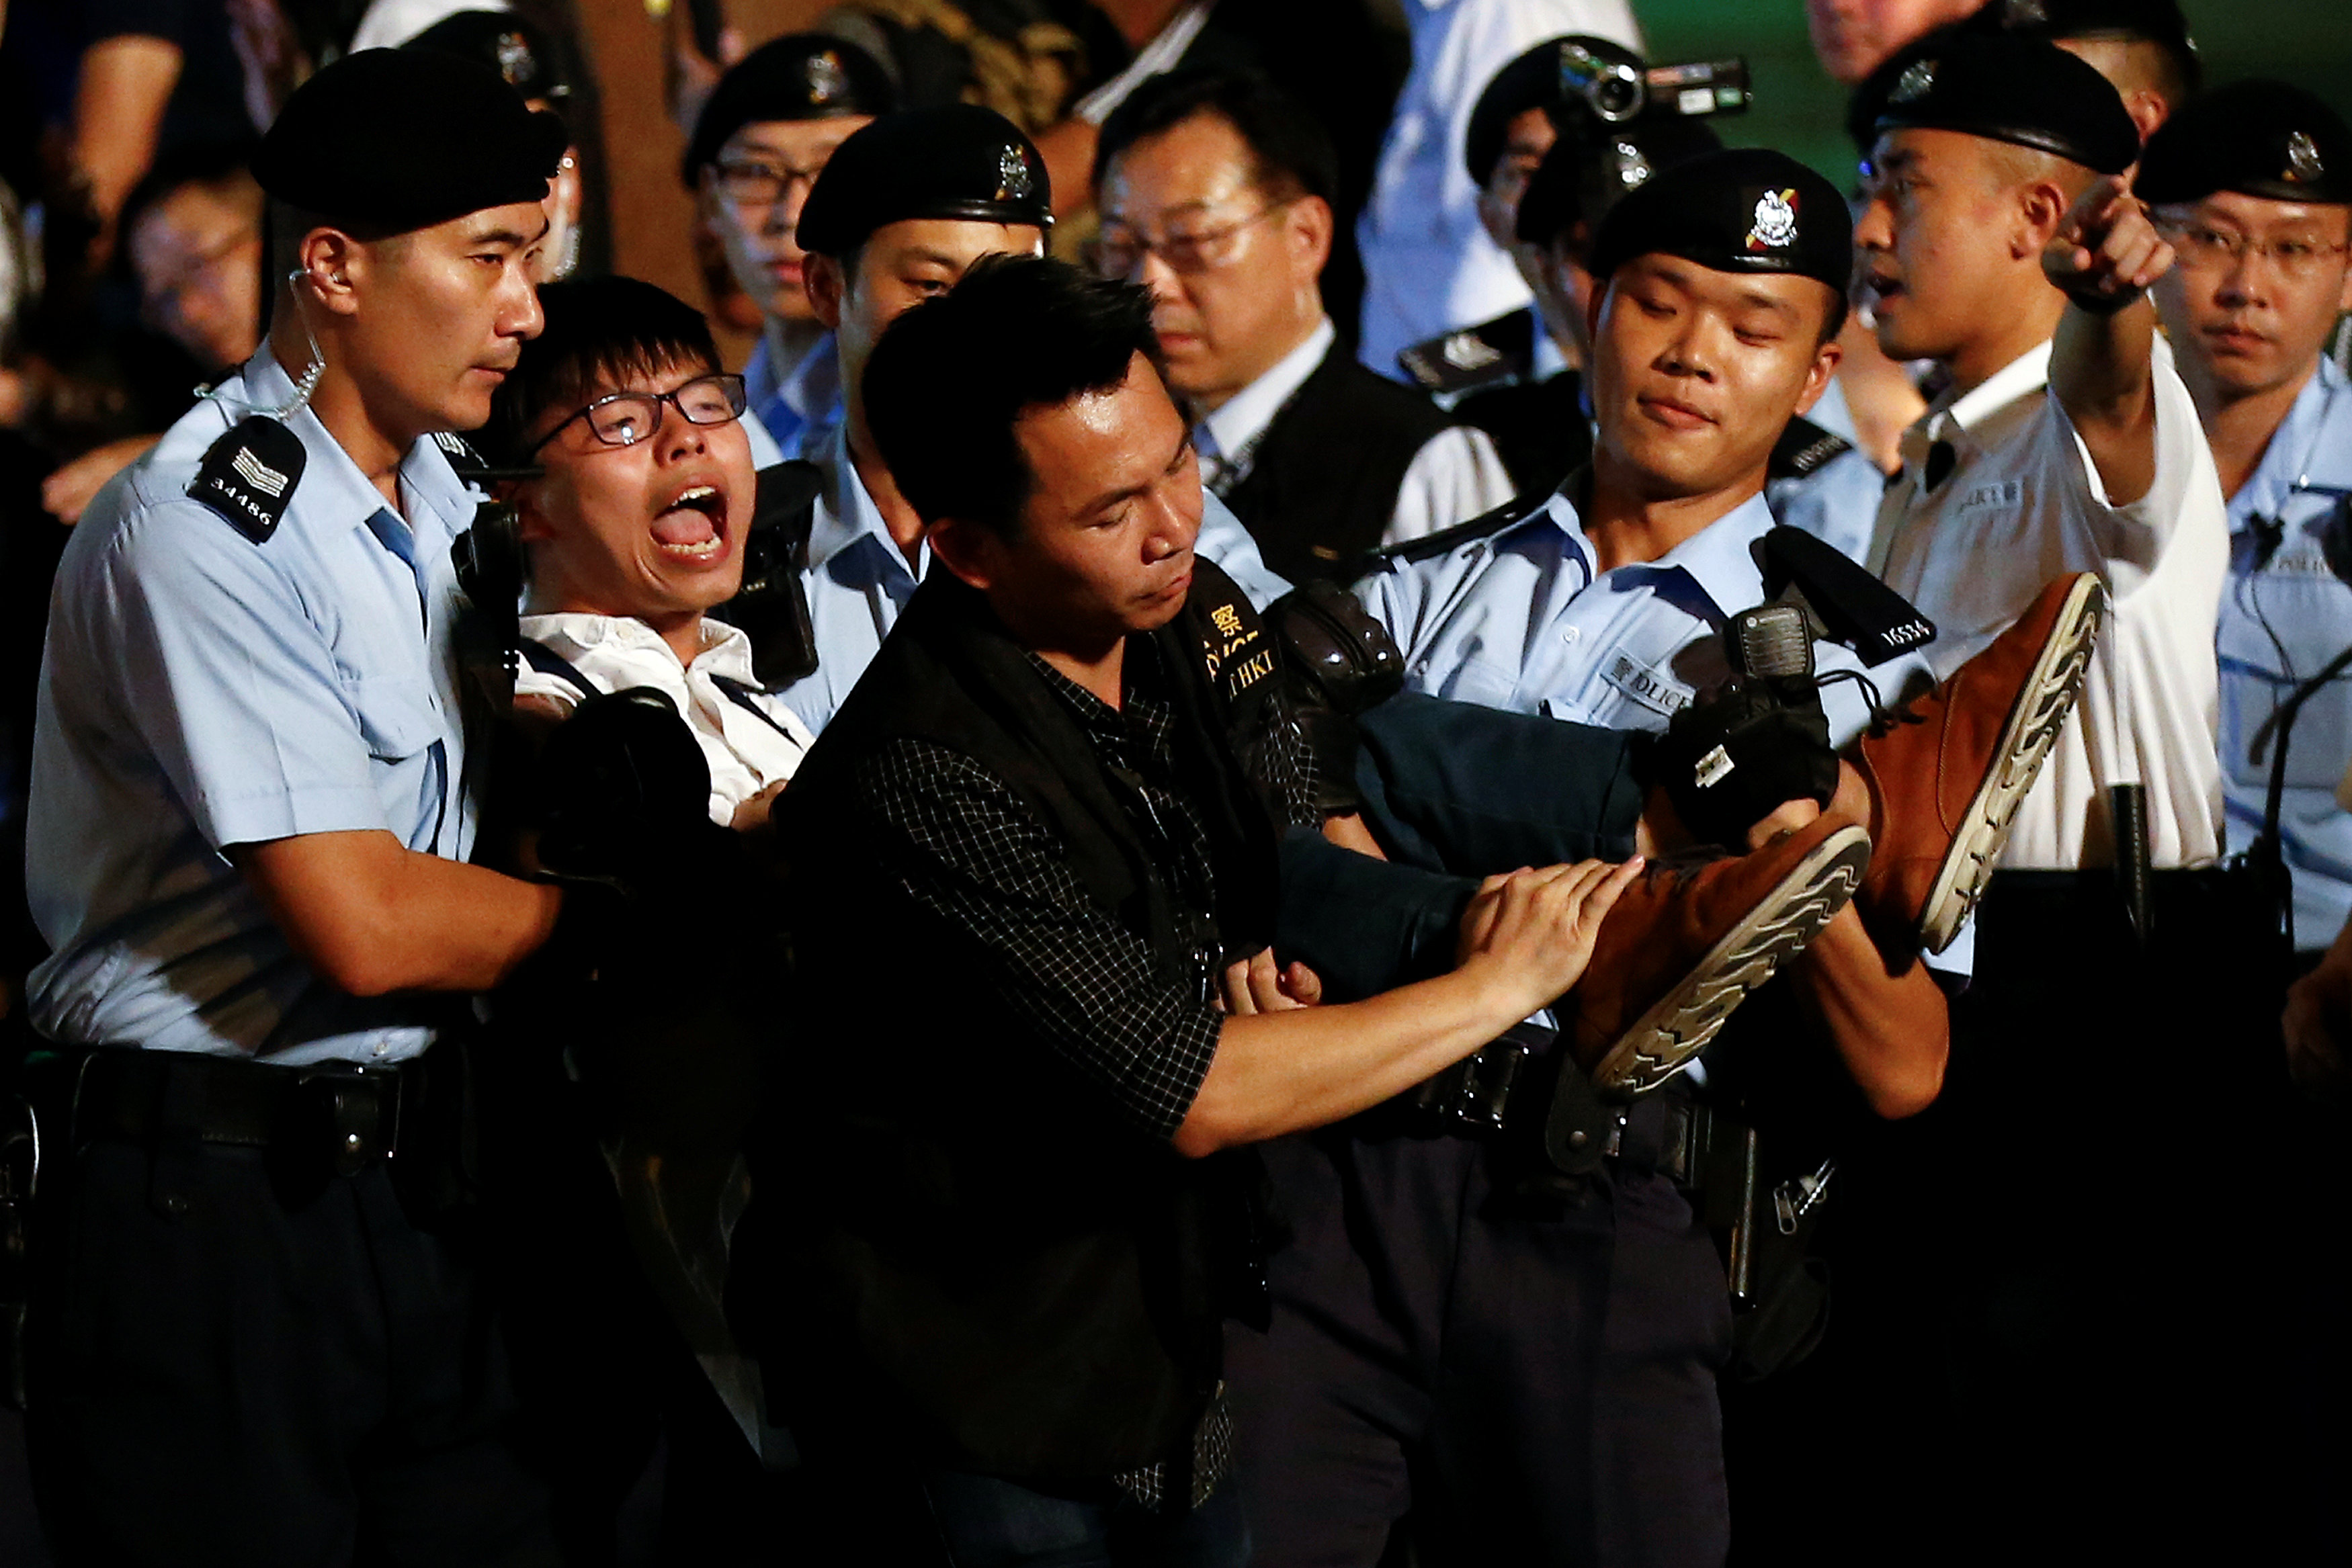 شرطة هونج كونج تصد محتجين برذاذ الفلفل بعد محاولتهم اقتحام البرلمان